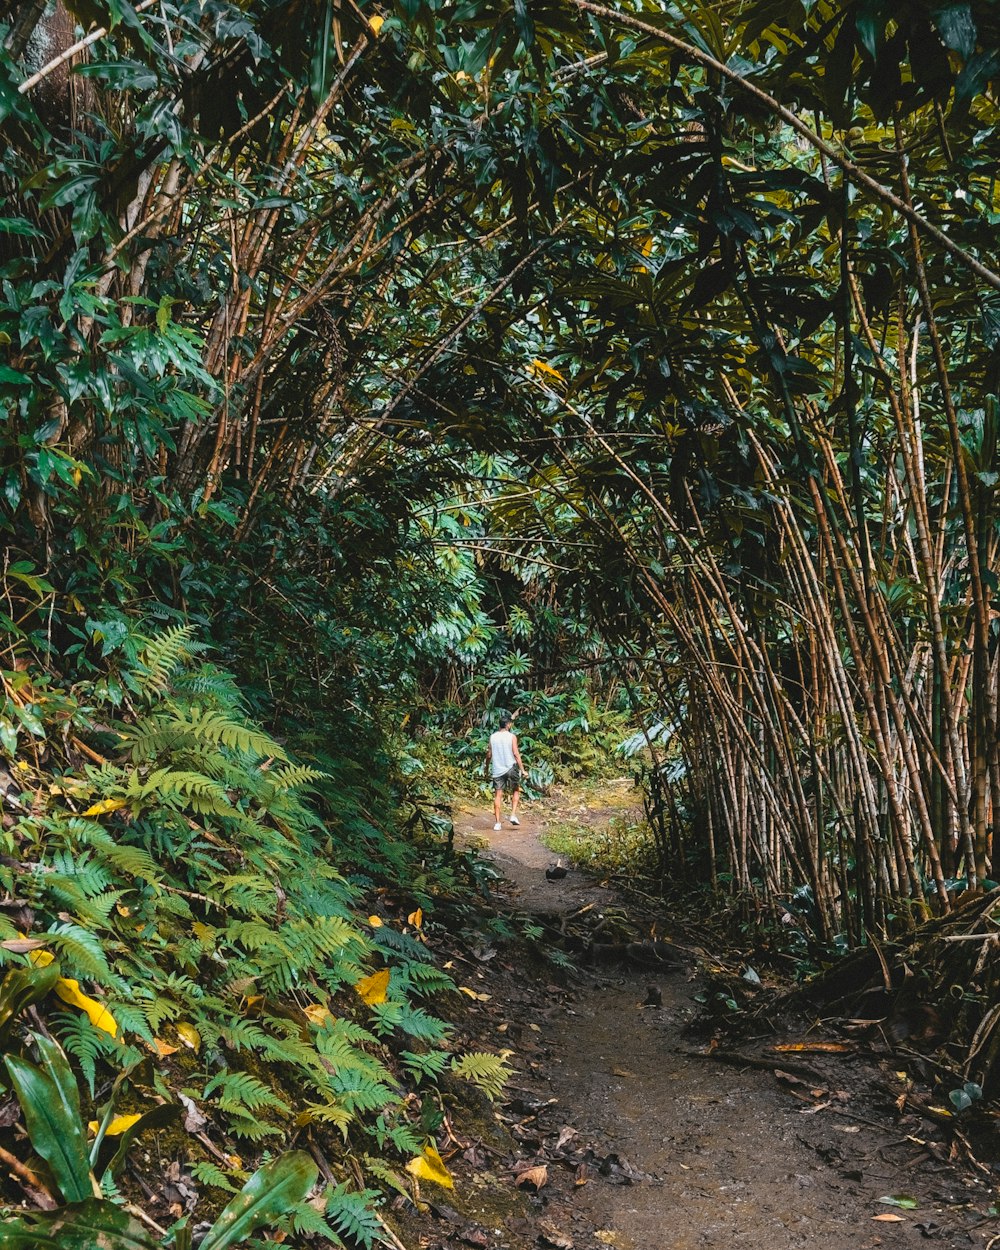 a person walking down a path through a forest